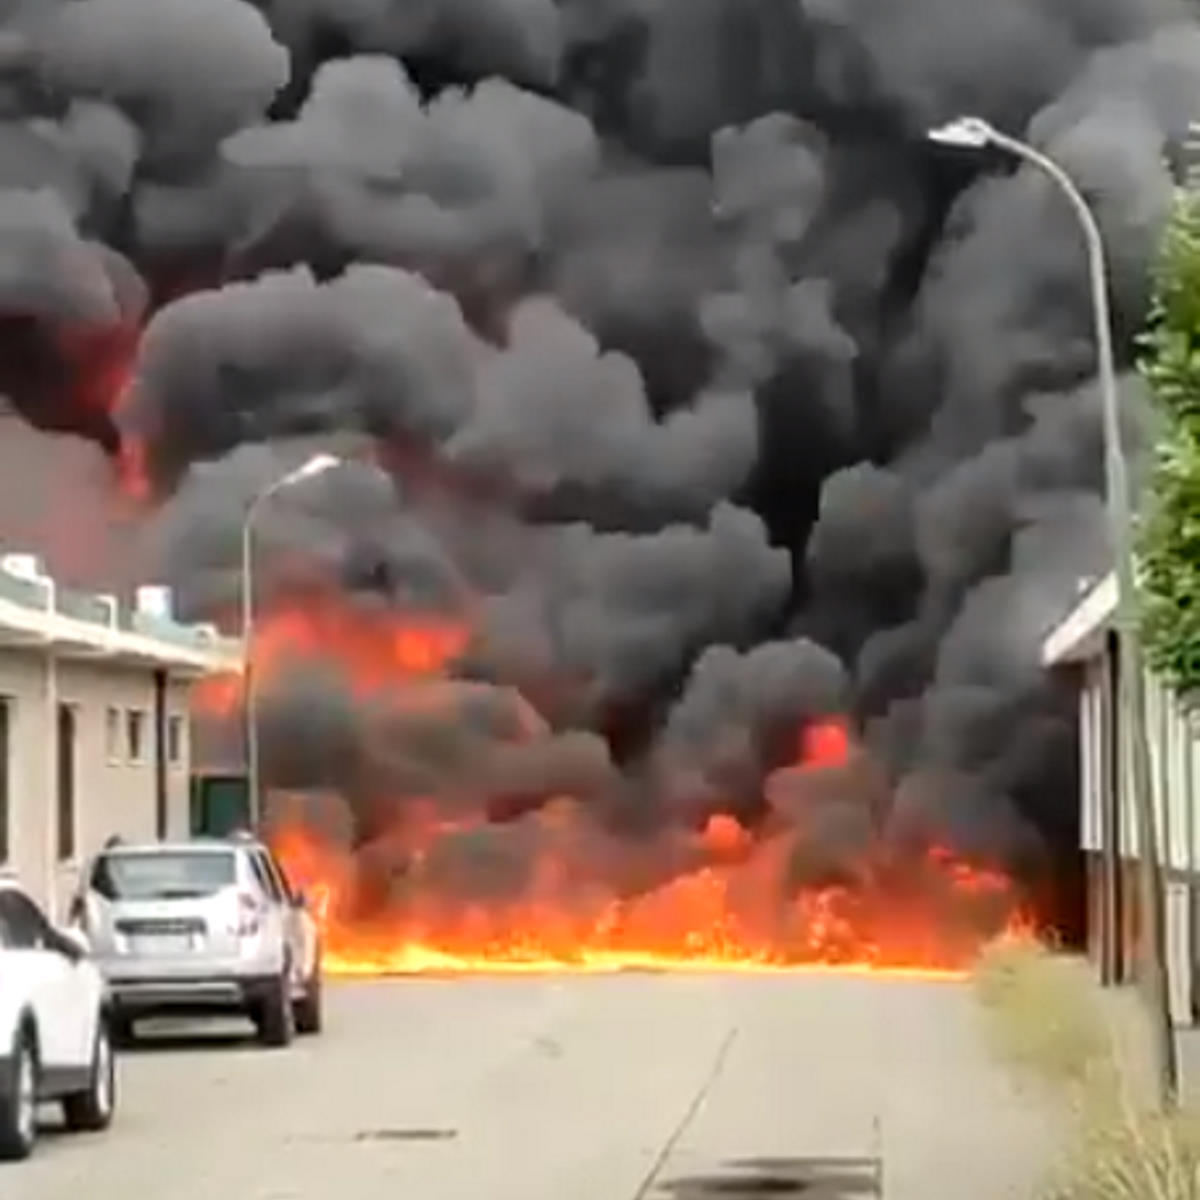 Impressionanti le immagini dell'incendio alla Nitrolchimica di San Giuliano Milanese. L'Arpa monitora la situazione